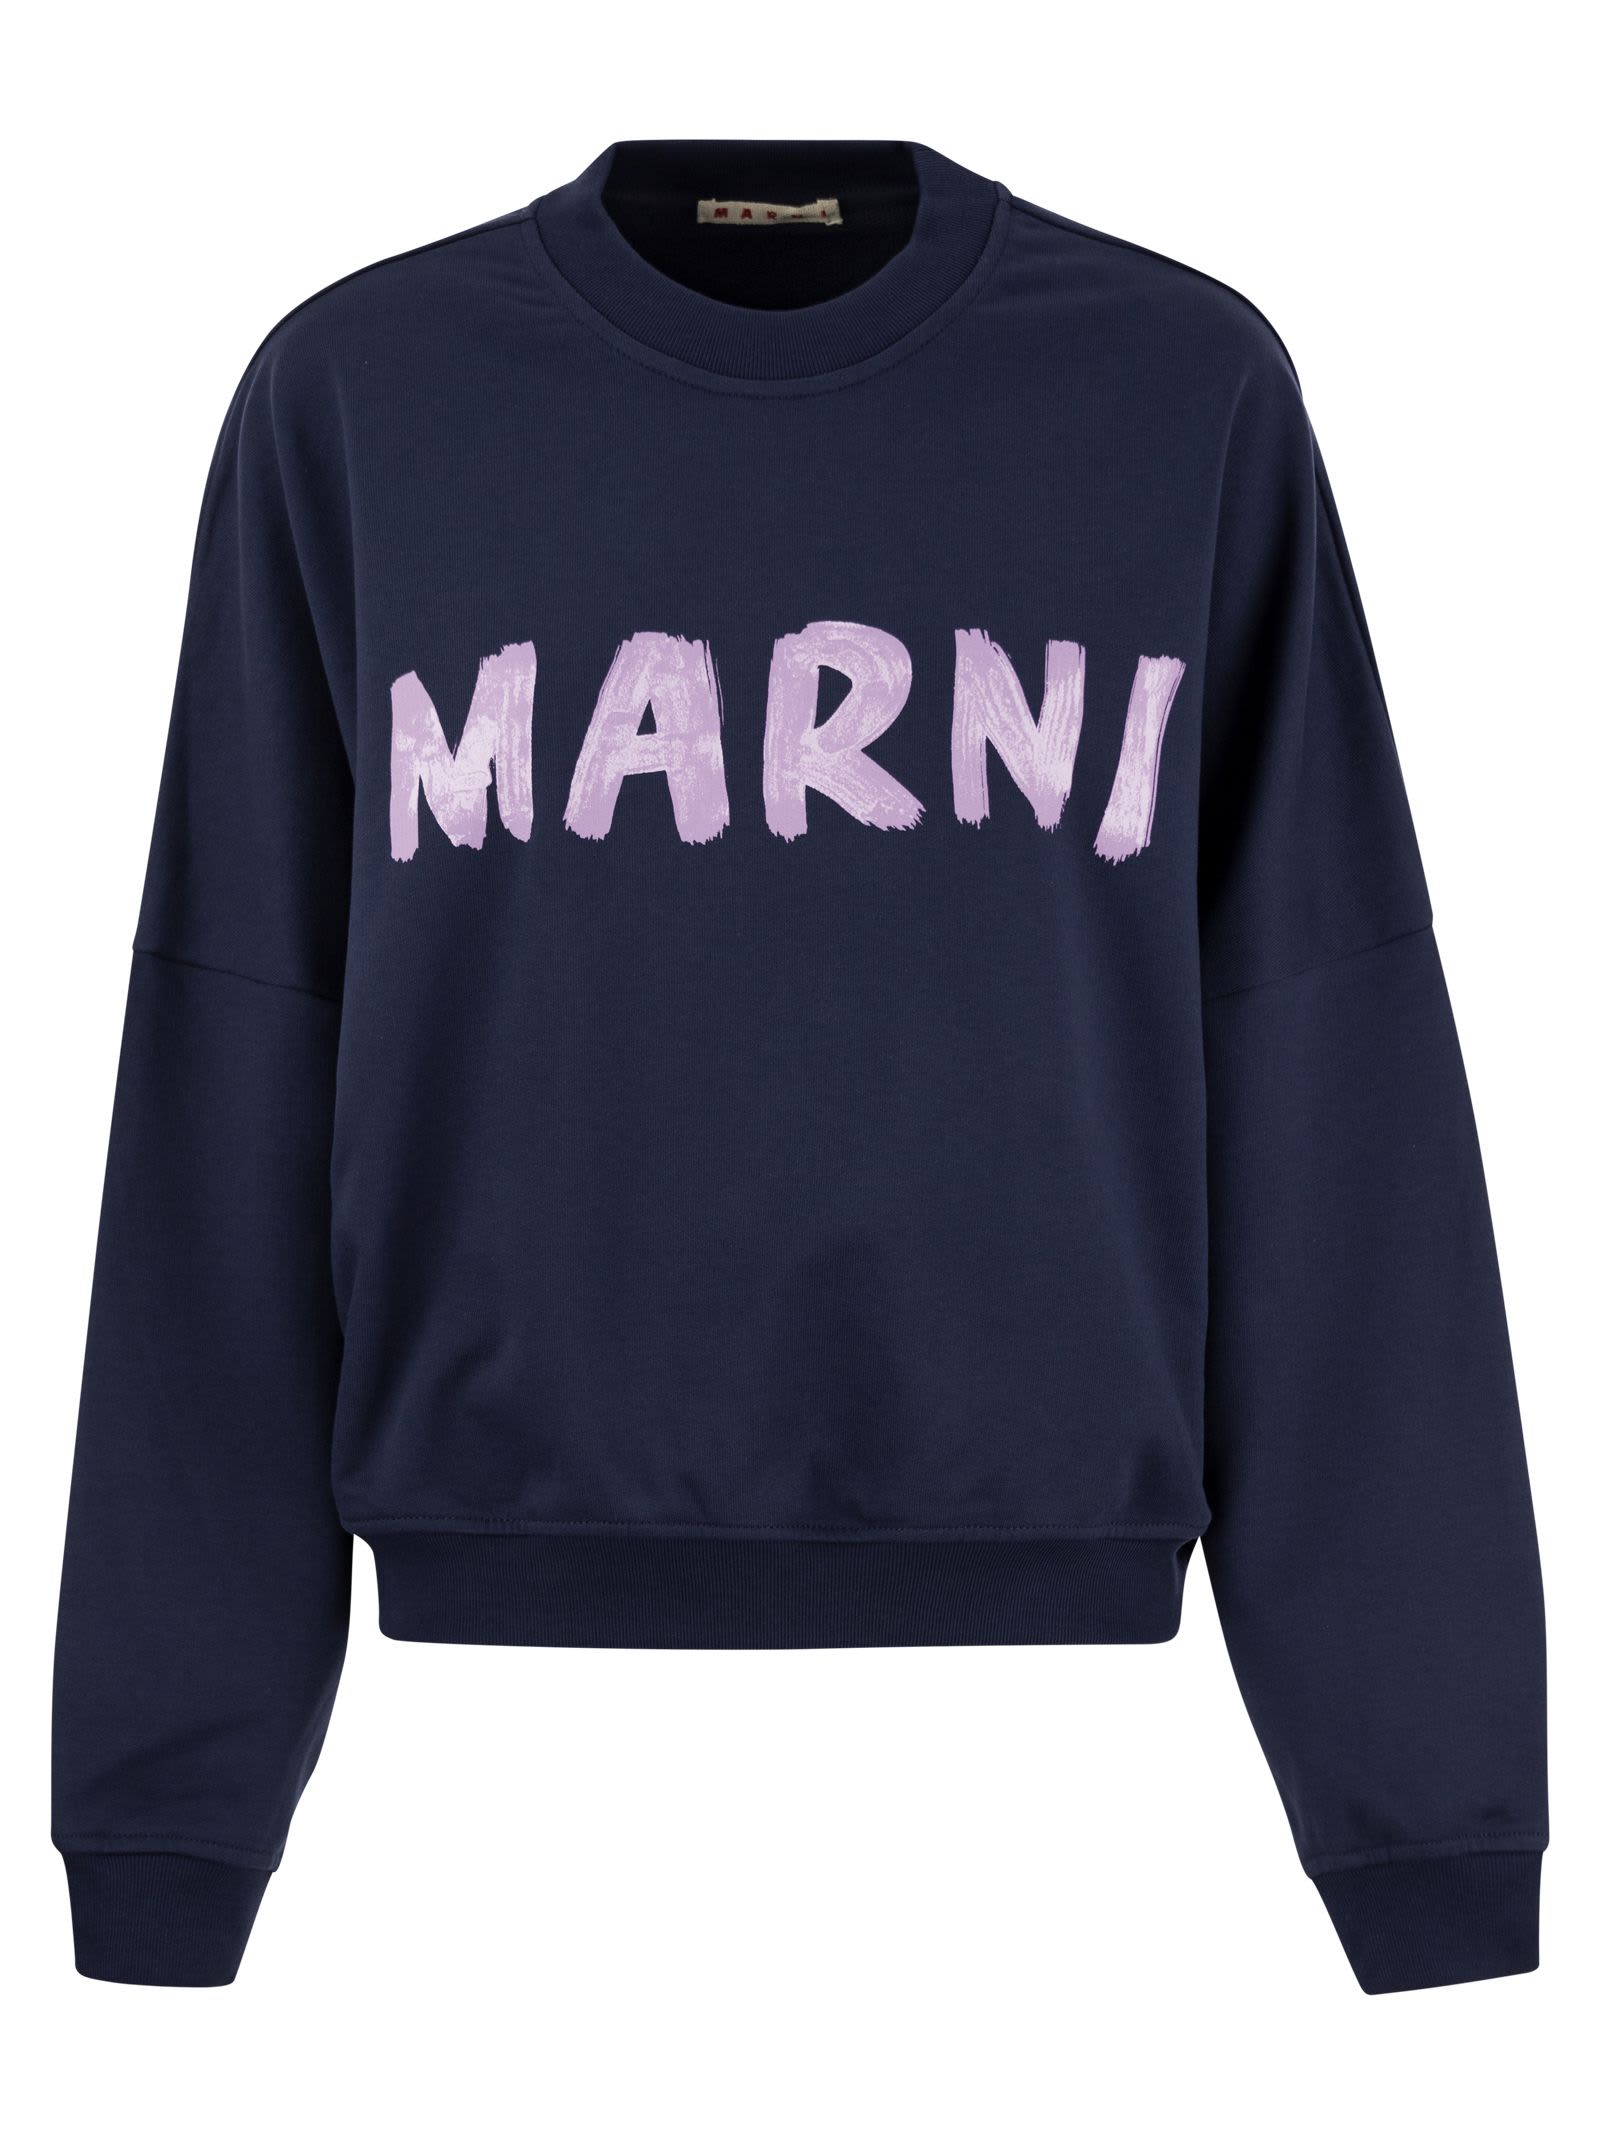 Marni Cotton Sweatshirt With Print